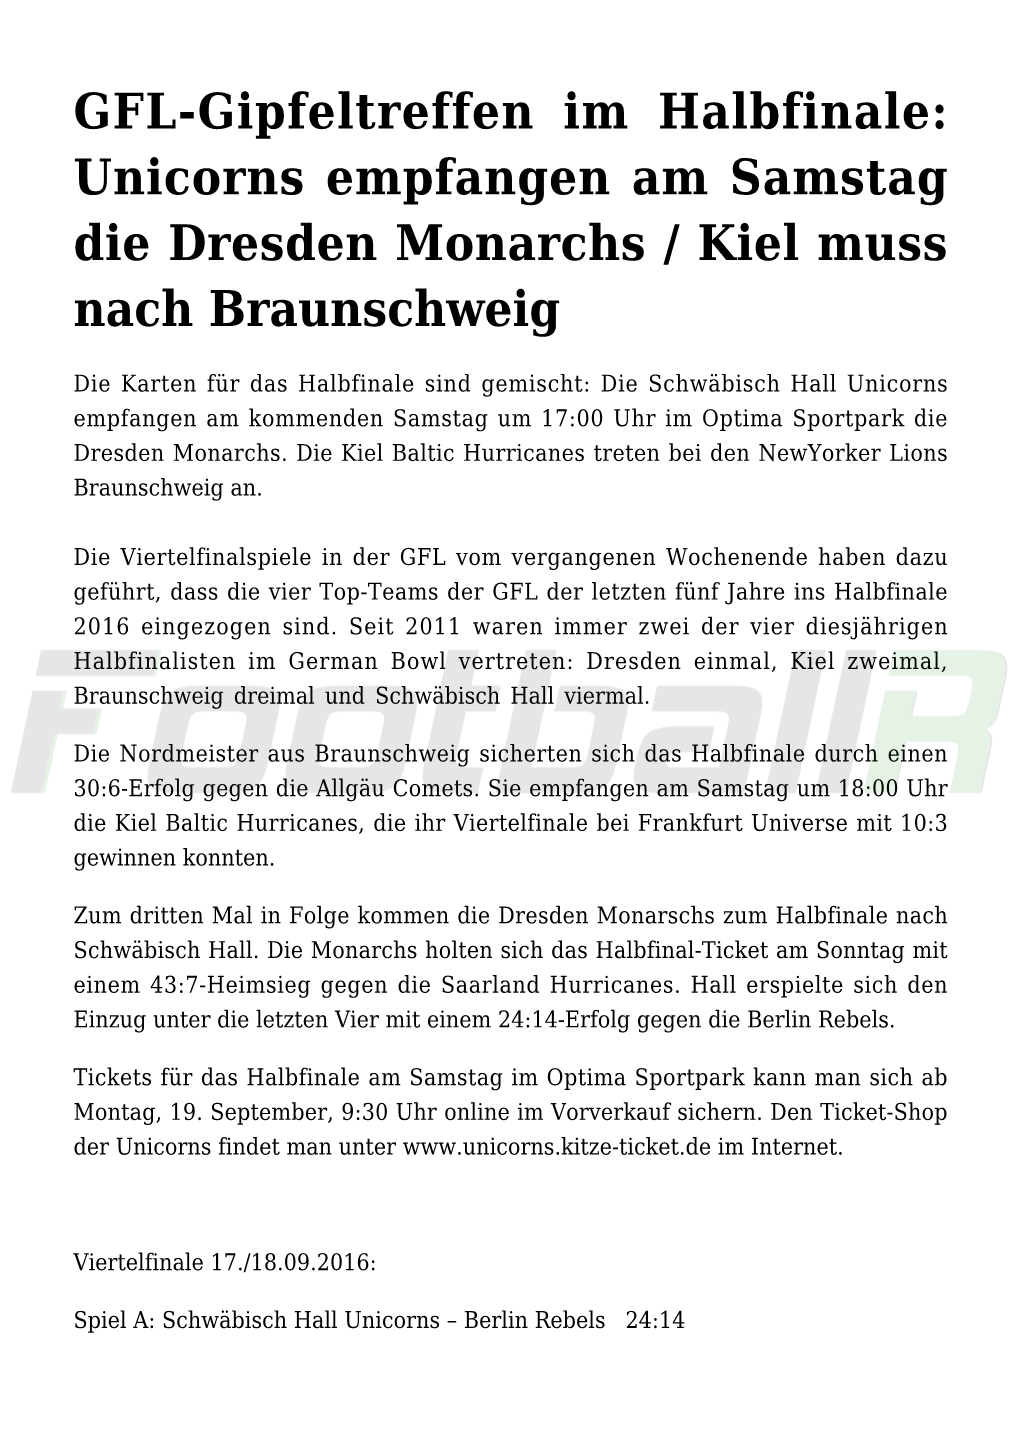 GFL-Gipfeltreffen Im Halbfinale: Unicorns Empfangen Am Samstag Die Dresden Monarchs / Kiel Muss Nach Braunschweig